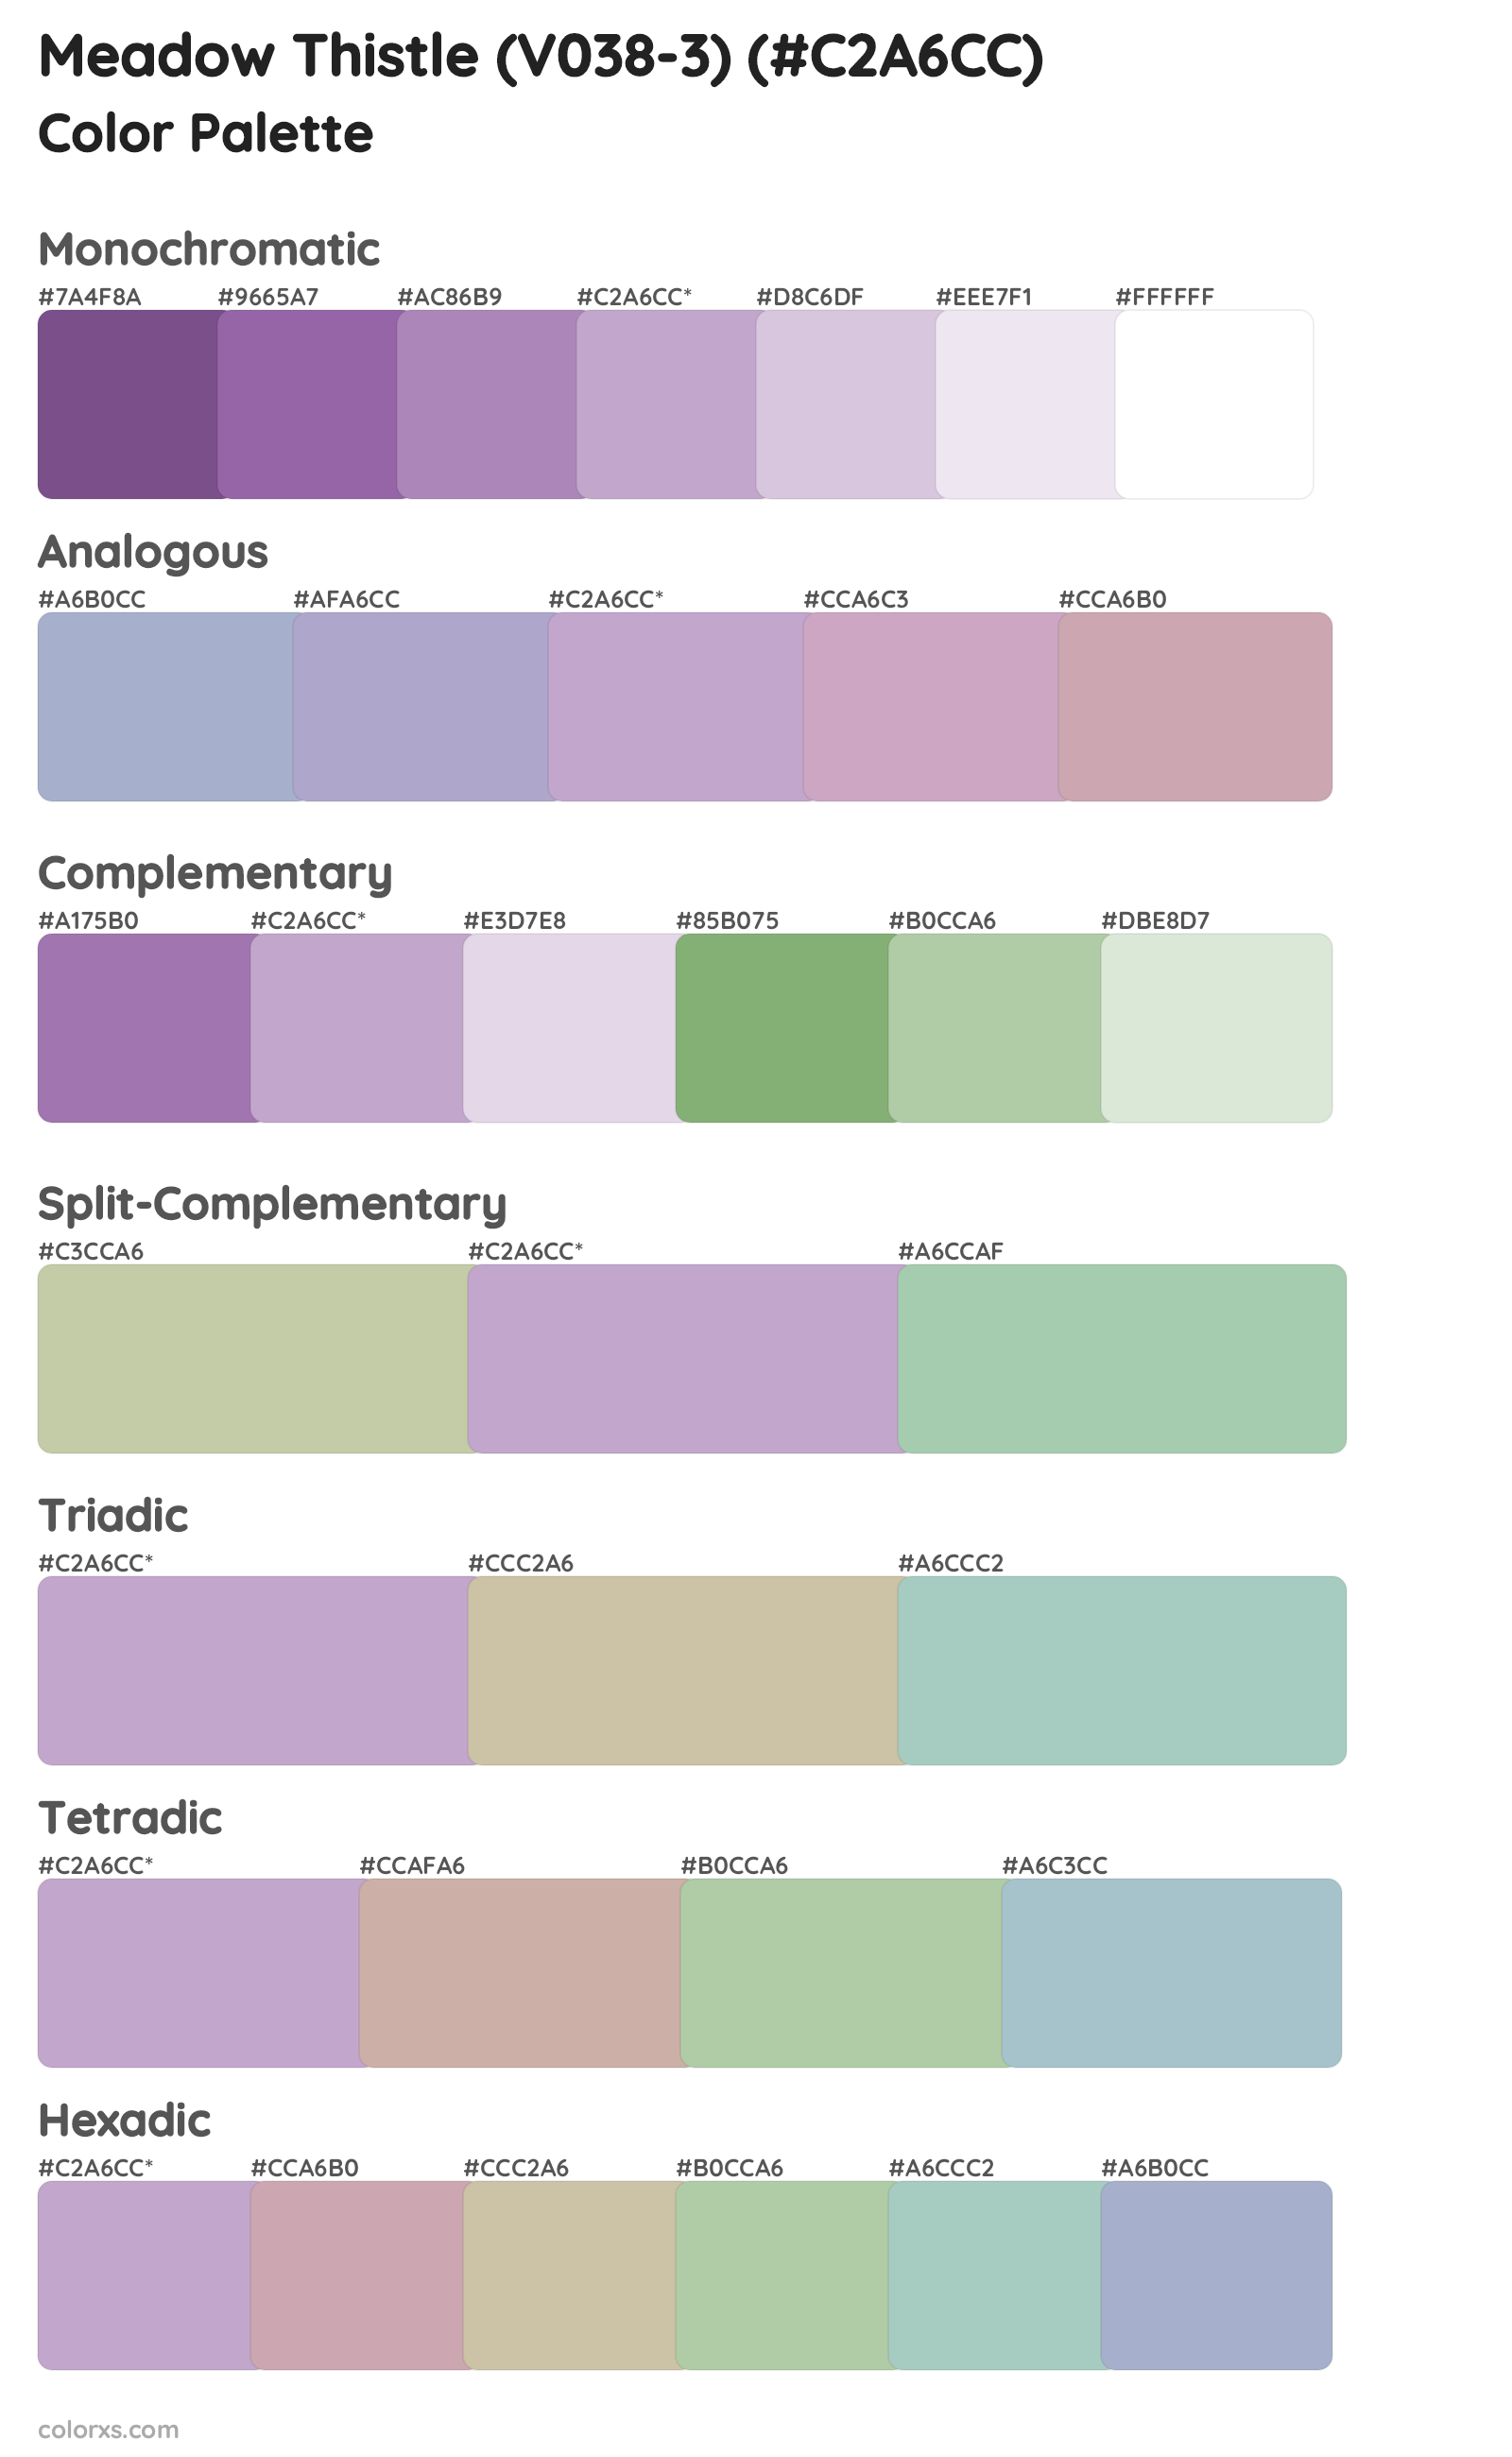 Meadow Thistle (V038-3) Color Scheme Palettes